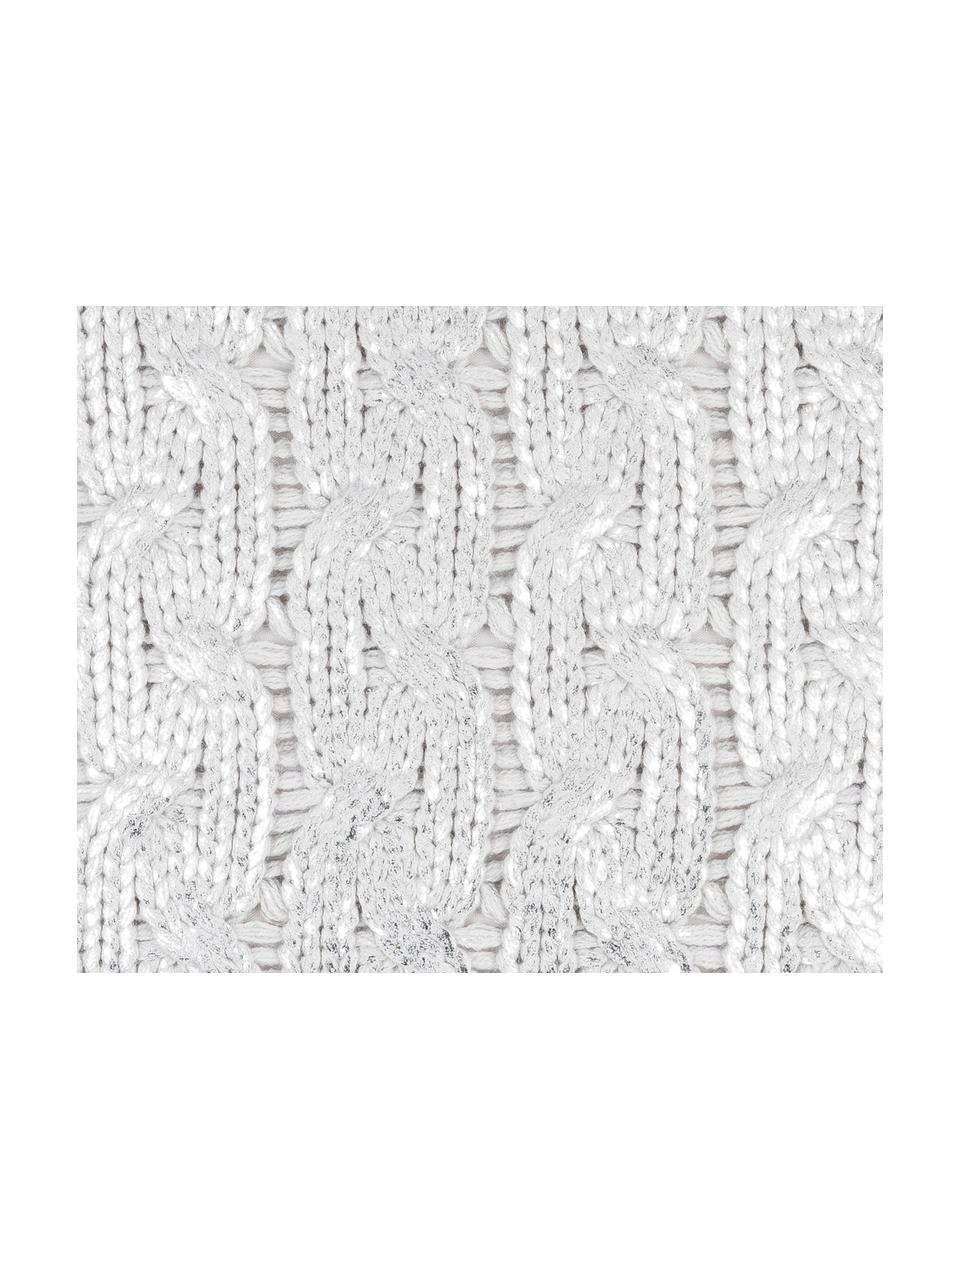 Federa arredo fatta a maglia effetto lucido Trenes, 100% acrilico, Grigio chiaro, argentato, Larg. 45 x Lung. 45 cm